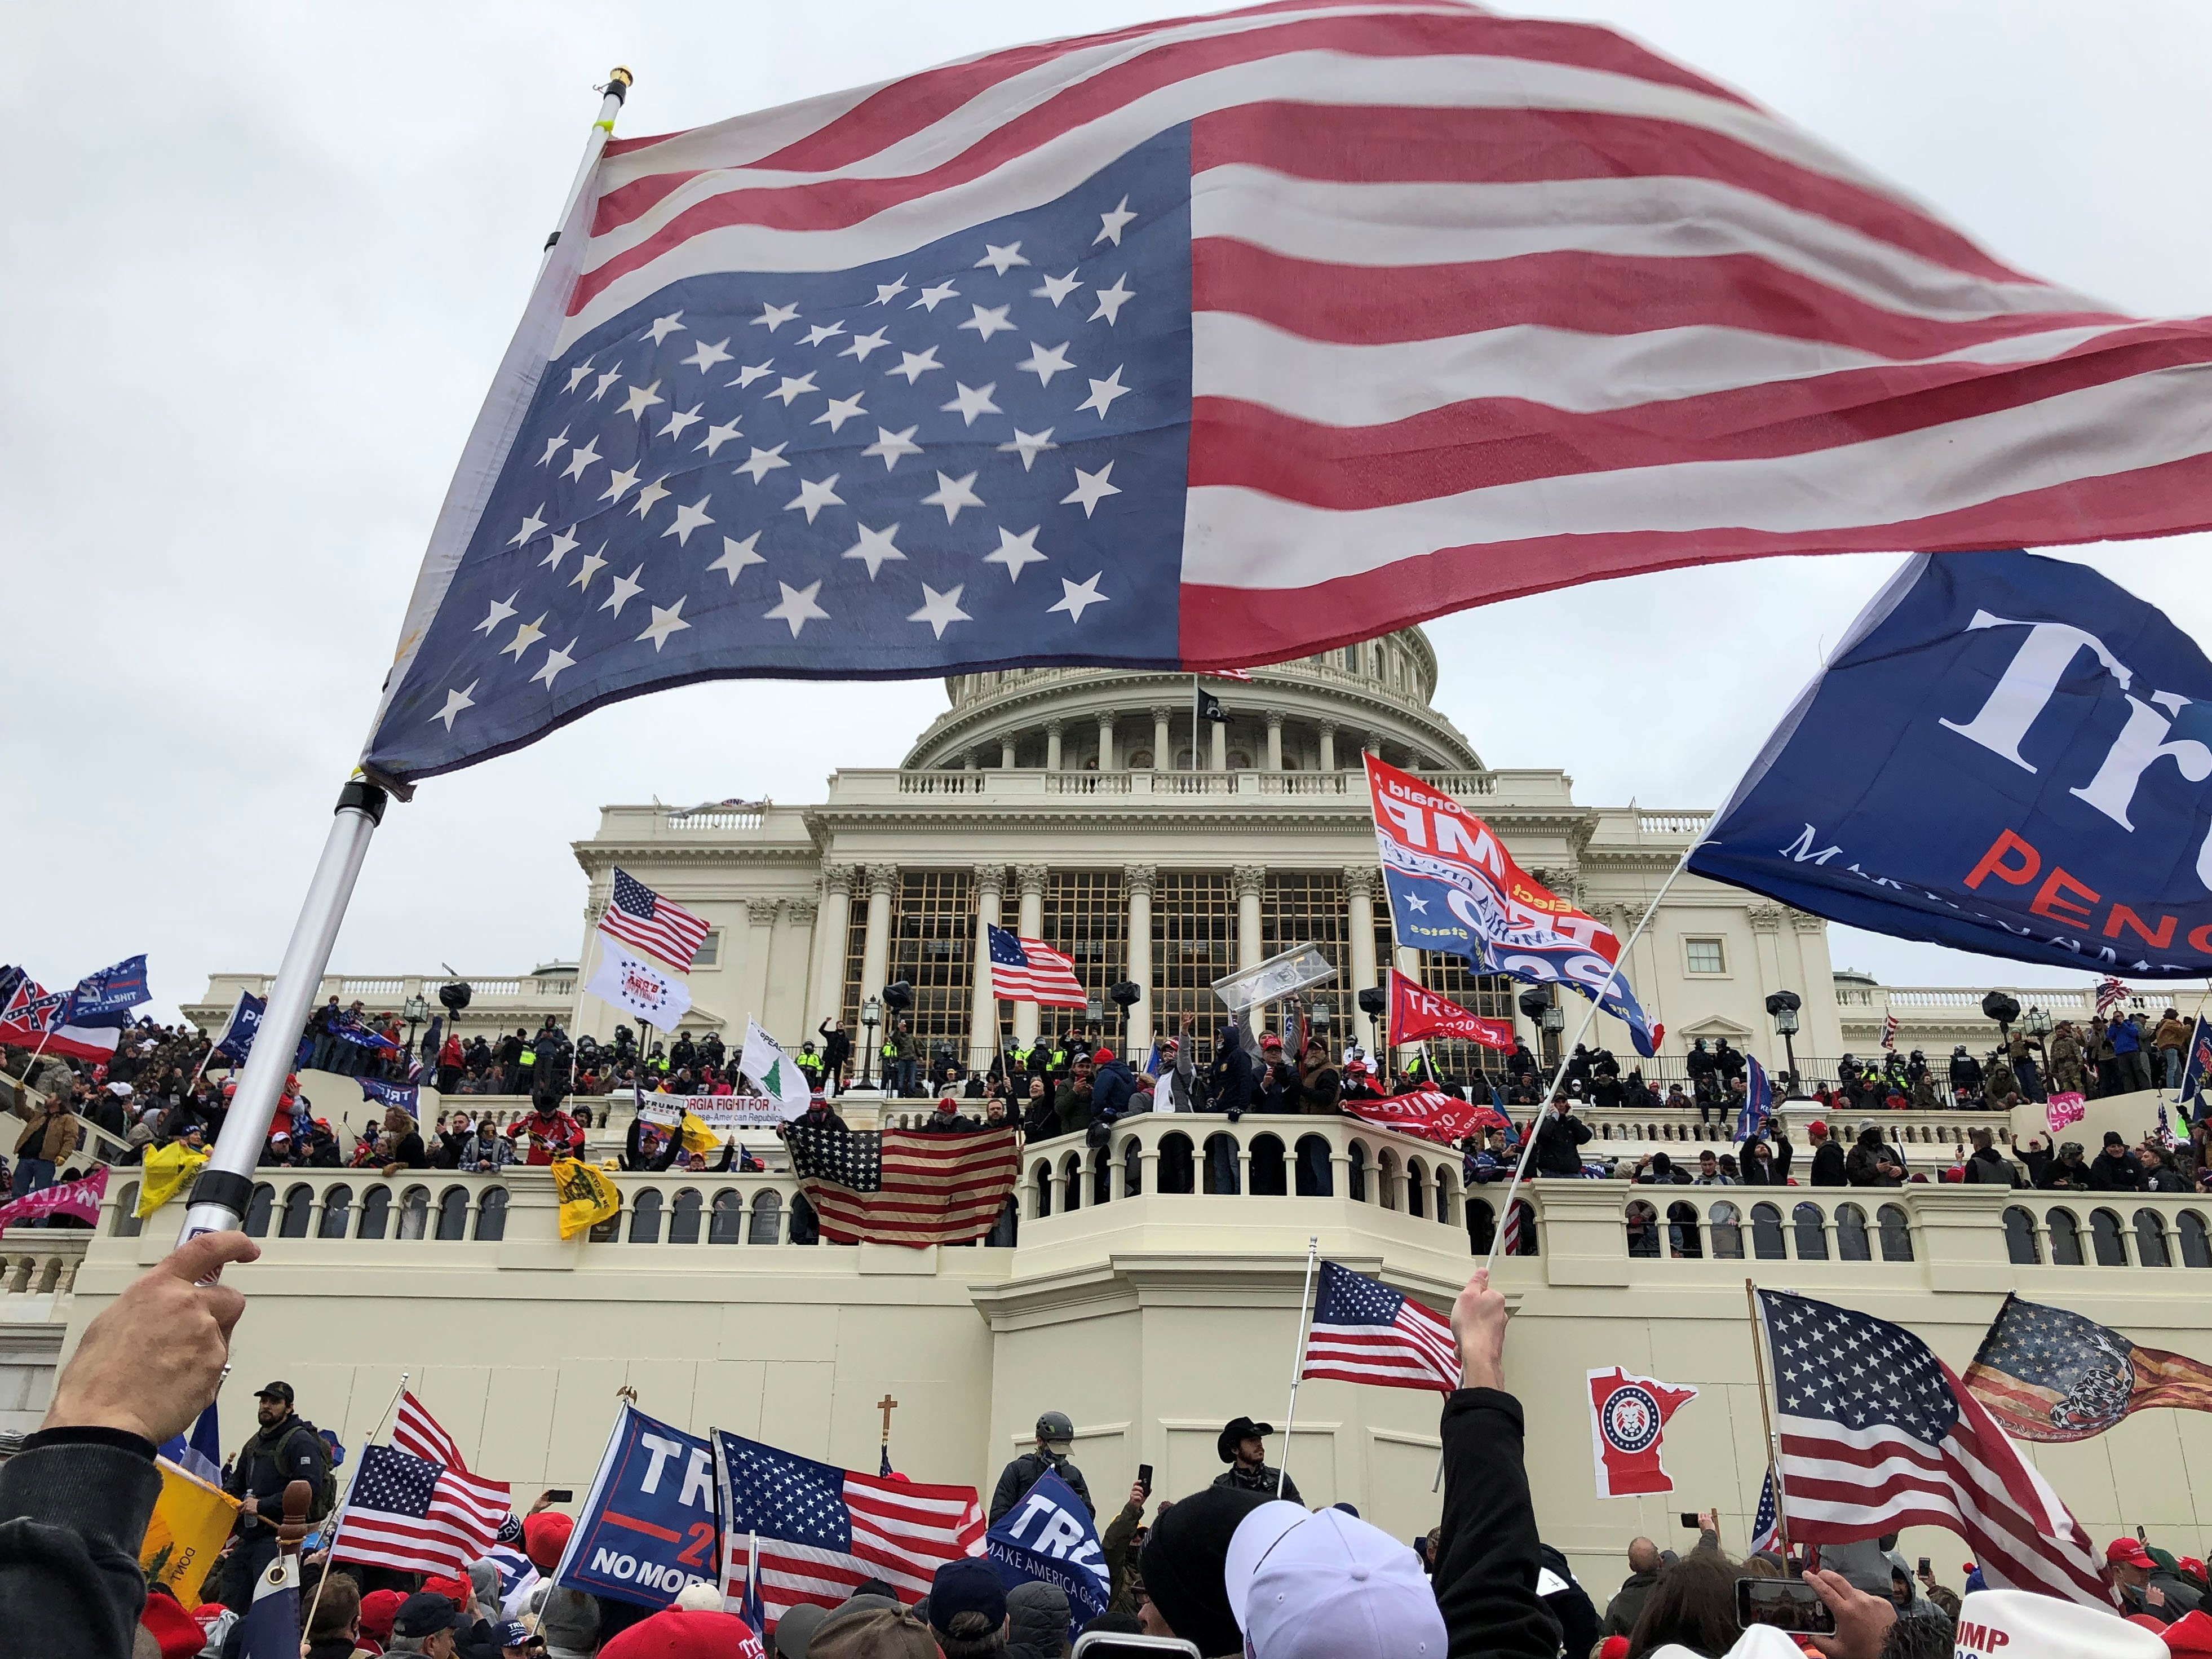 
Apoiadores do presidente dos EUA, Donald Trump, ocupam o edifício do Capitólio dos EUA em Washington